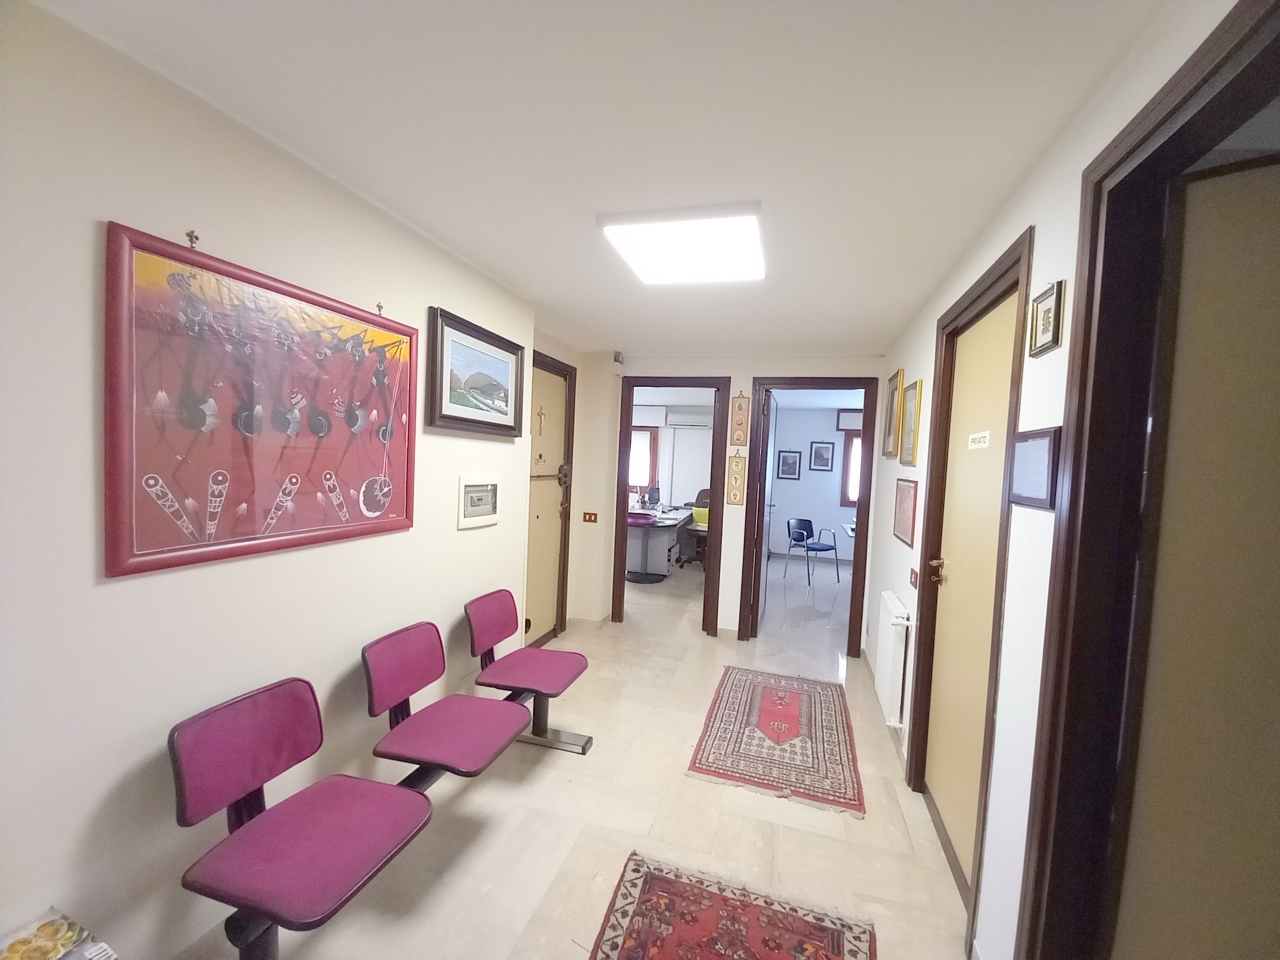 Ufficio in vendita a Palermo